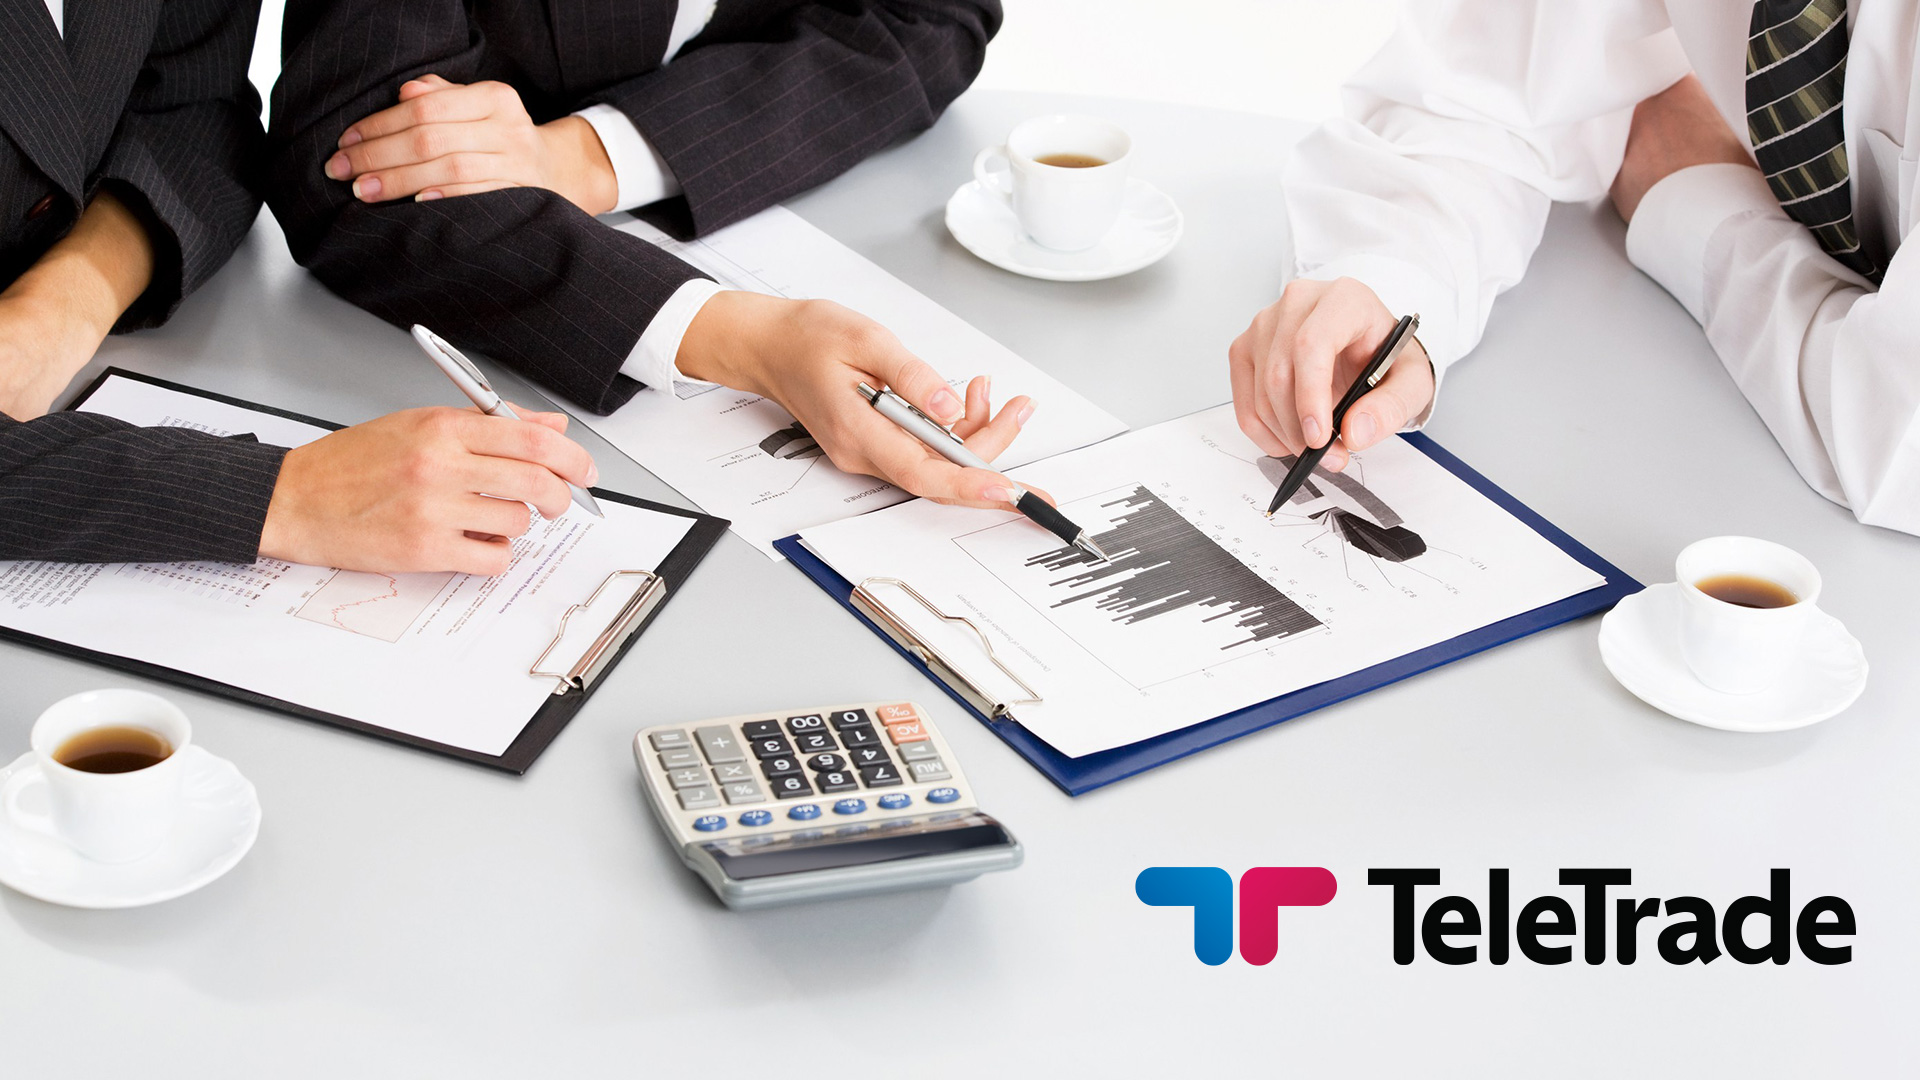 phản hồi về TeleTrade, đánh giá hoạt động TeleTrade, phản hồi về công ty TeleTrade, đào tạo Forex, học đầu tư Forex, tư vấn Forex, tư vấn đầu tư tài chính, sàn giao dịch ngoại hối tại Việt Nam